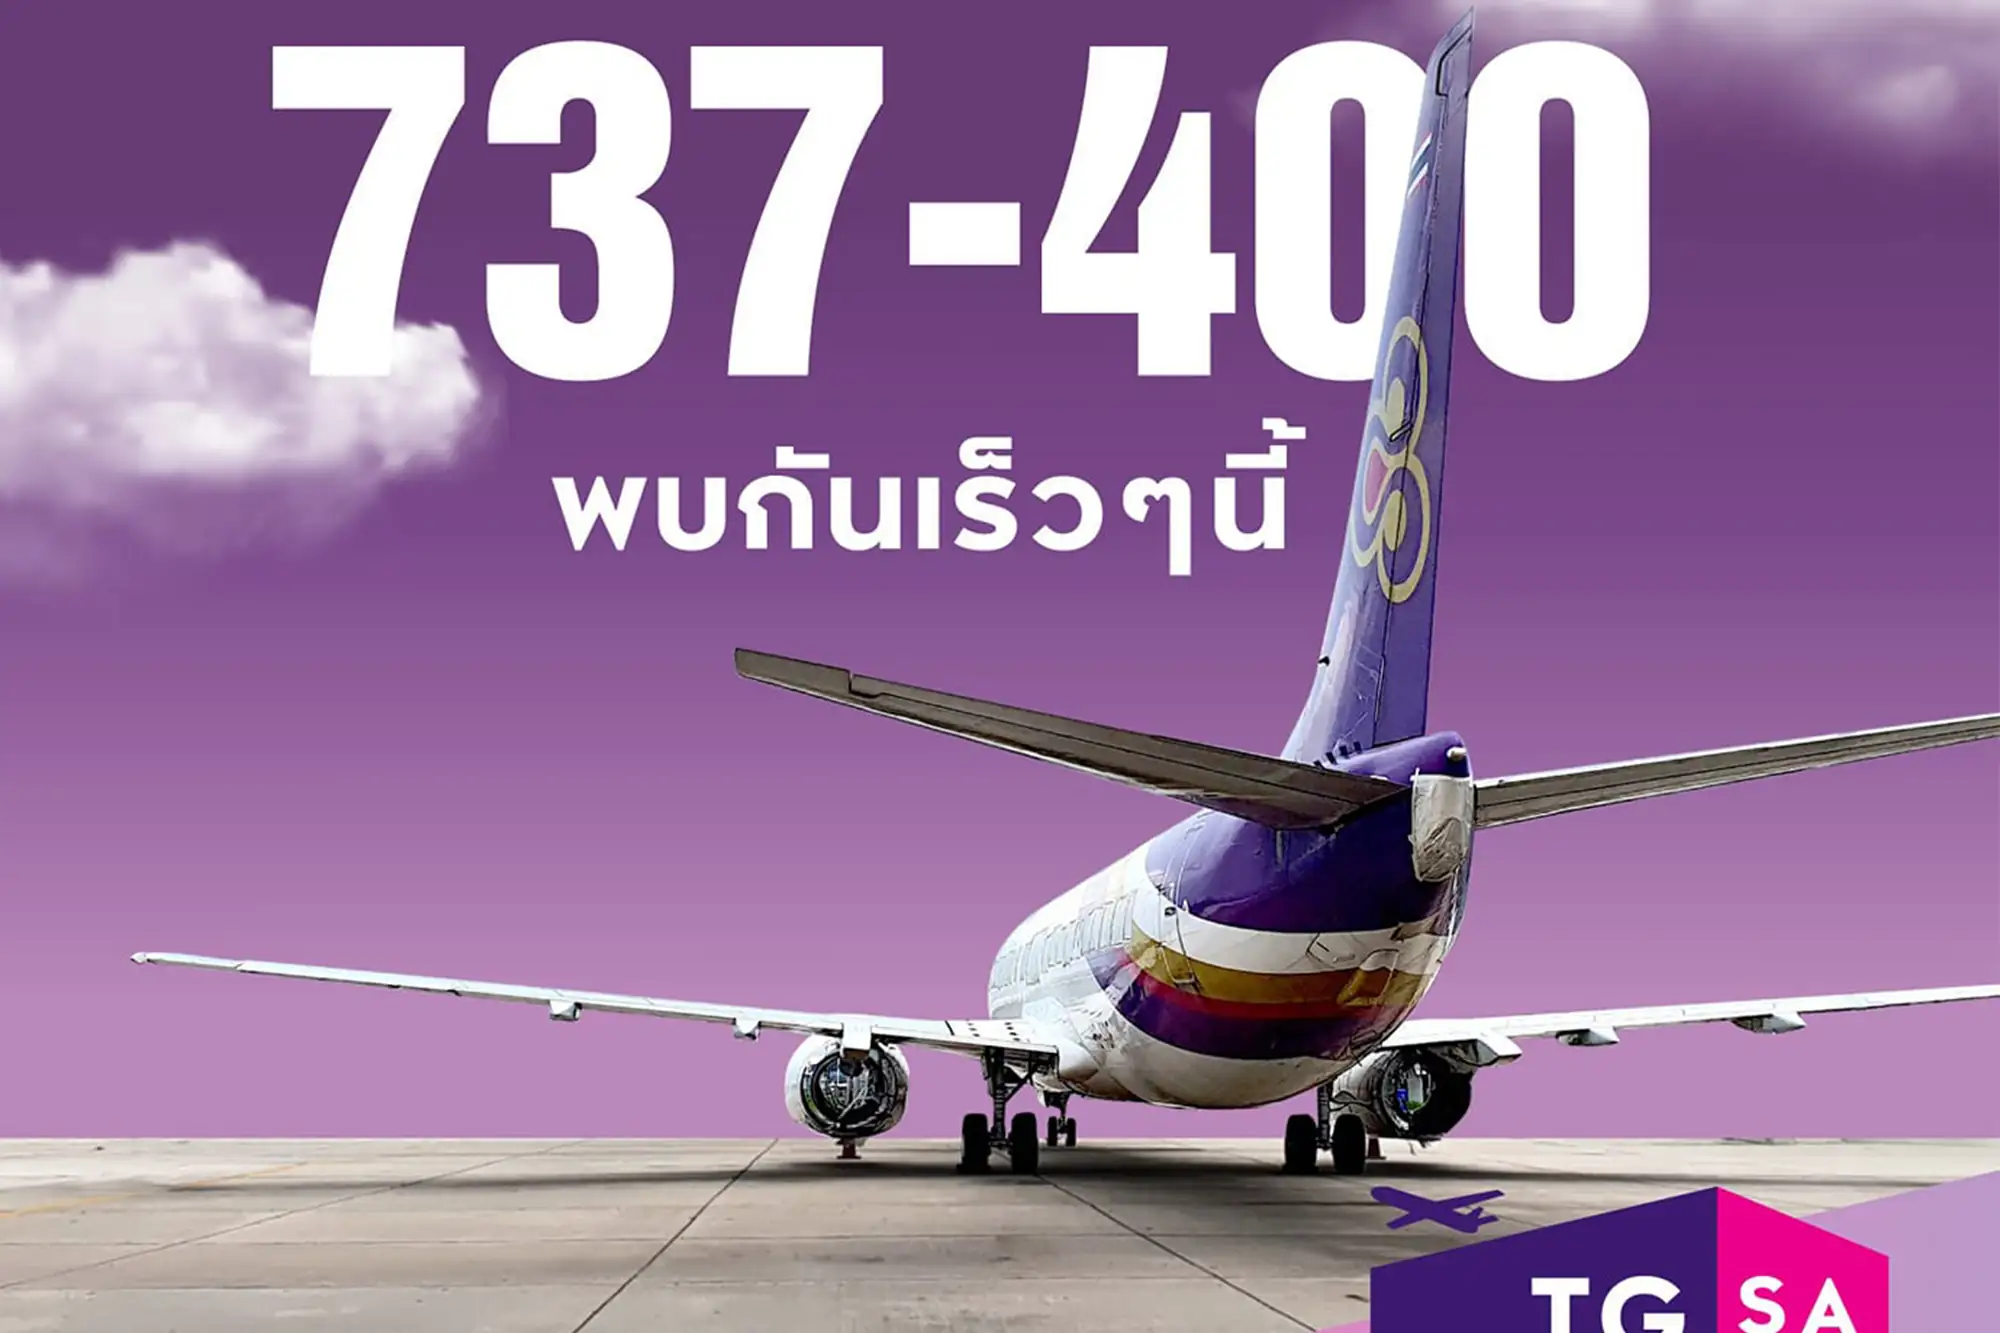 繼賣油條泰航再出奇招！波音737-400機身登臉書拍賣（圖片來源：泰航臉書）